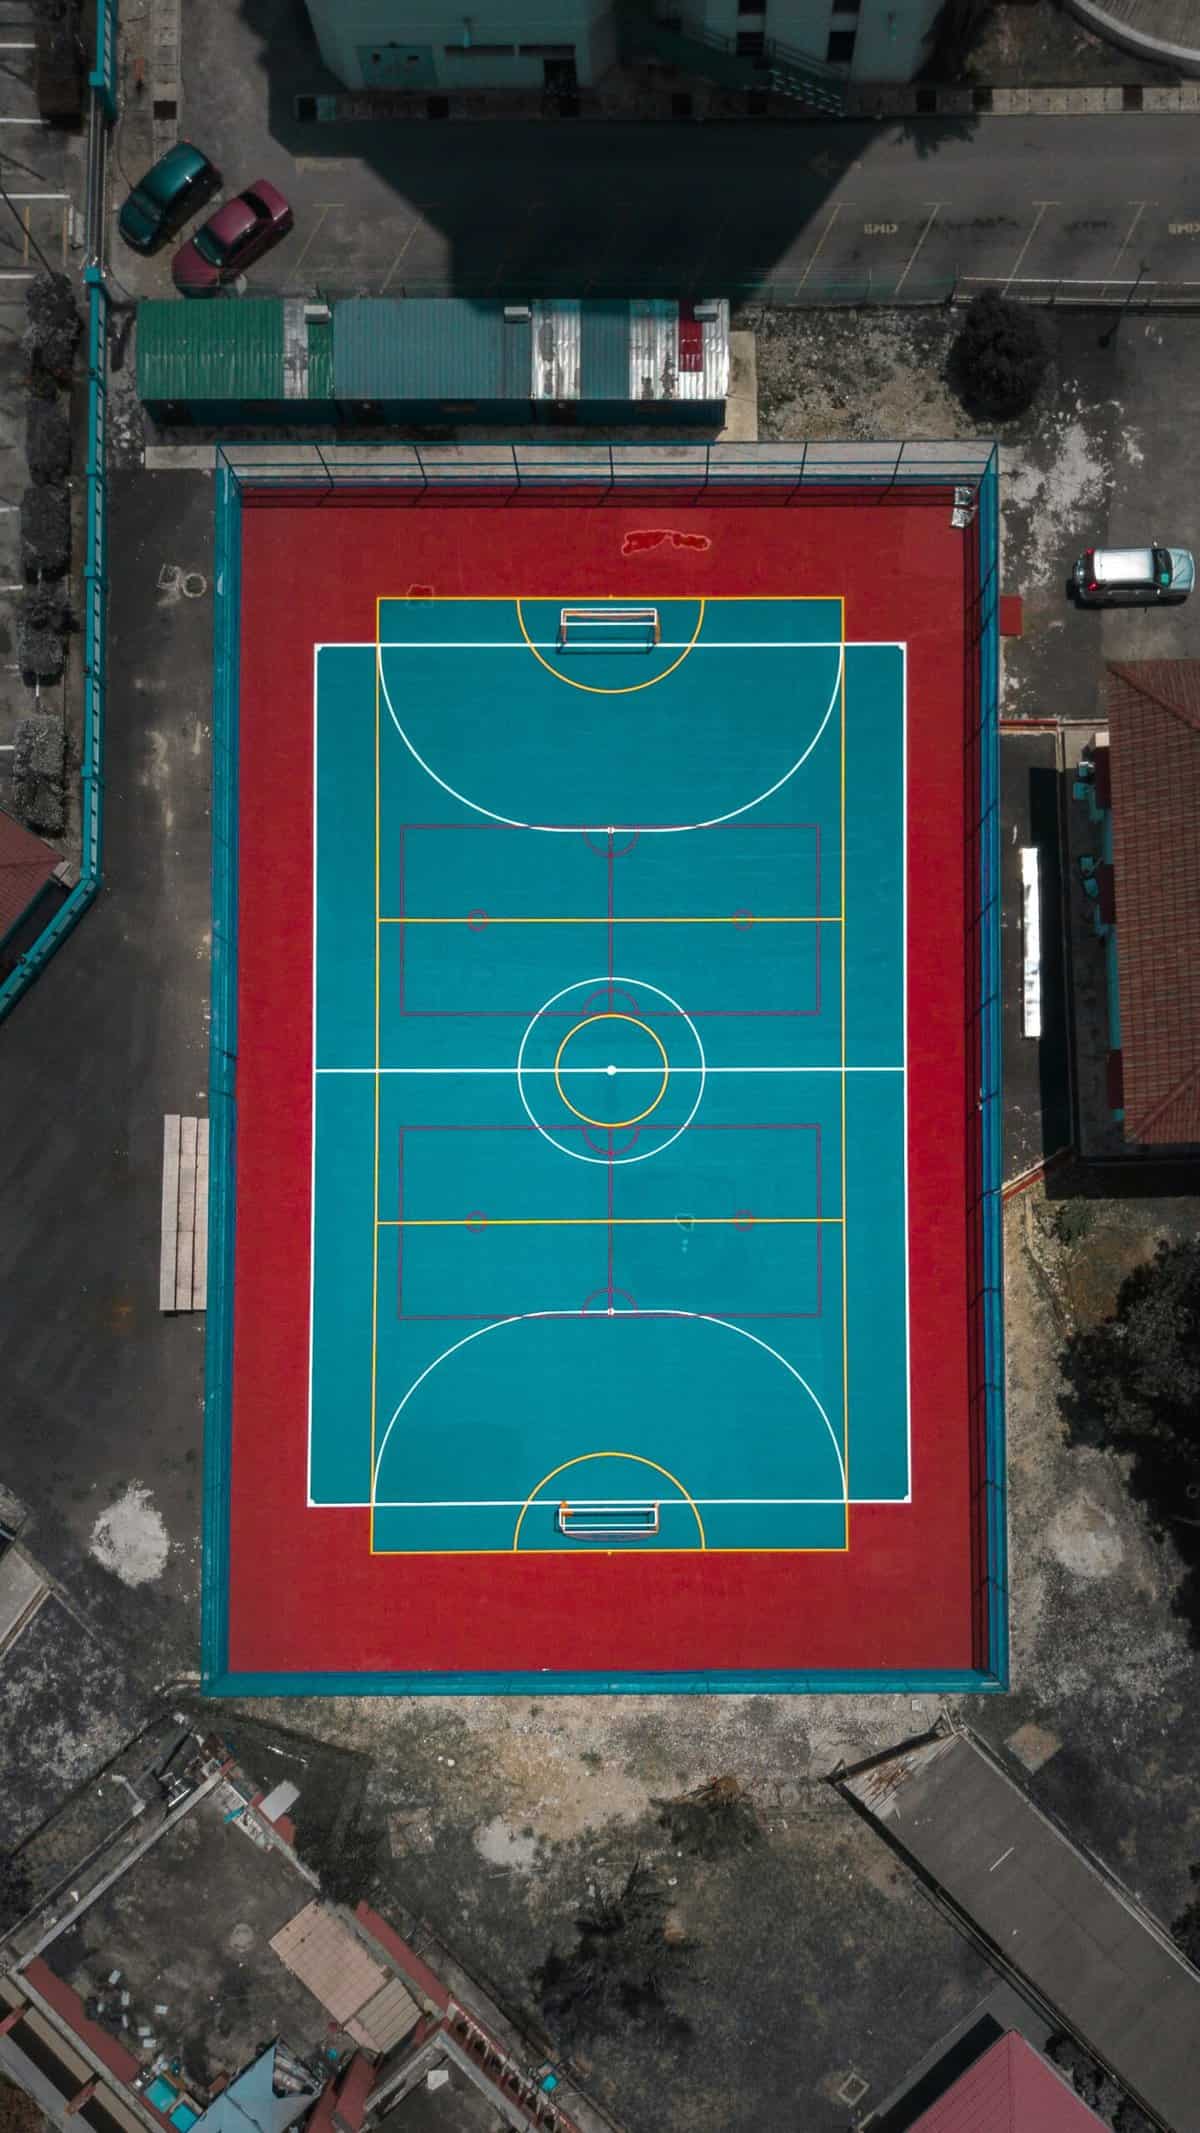 futsal field size